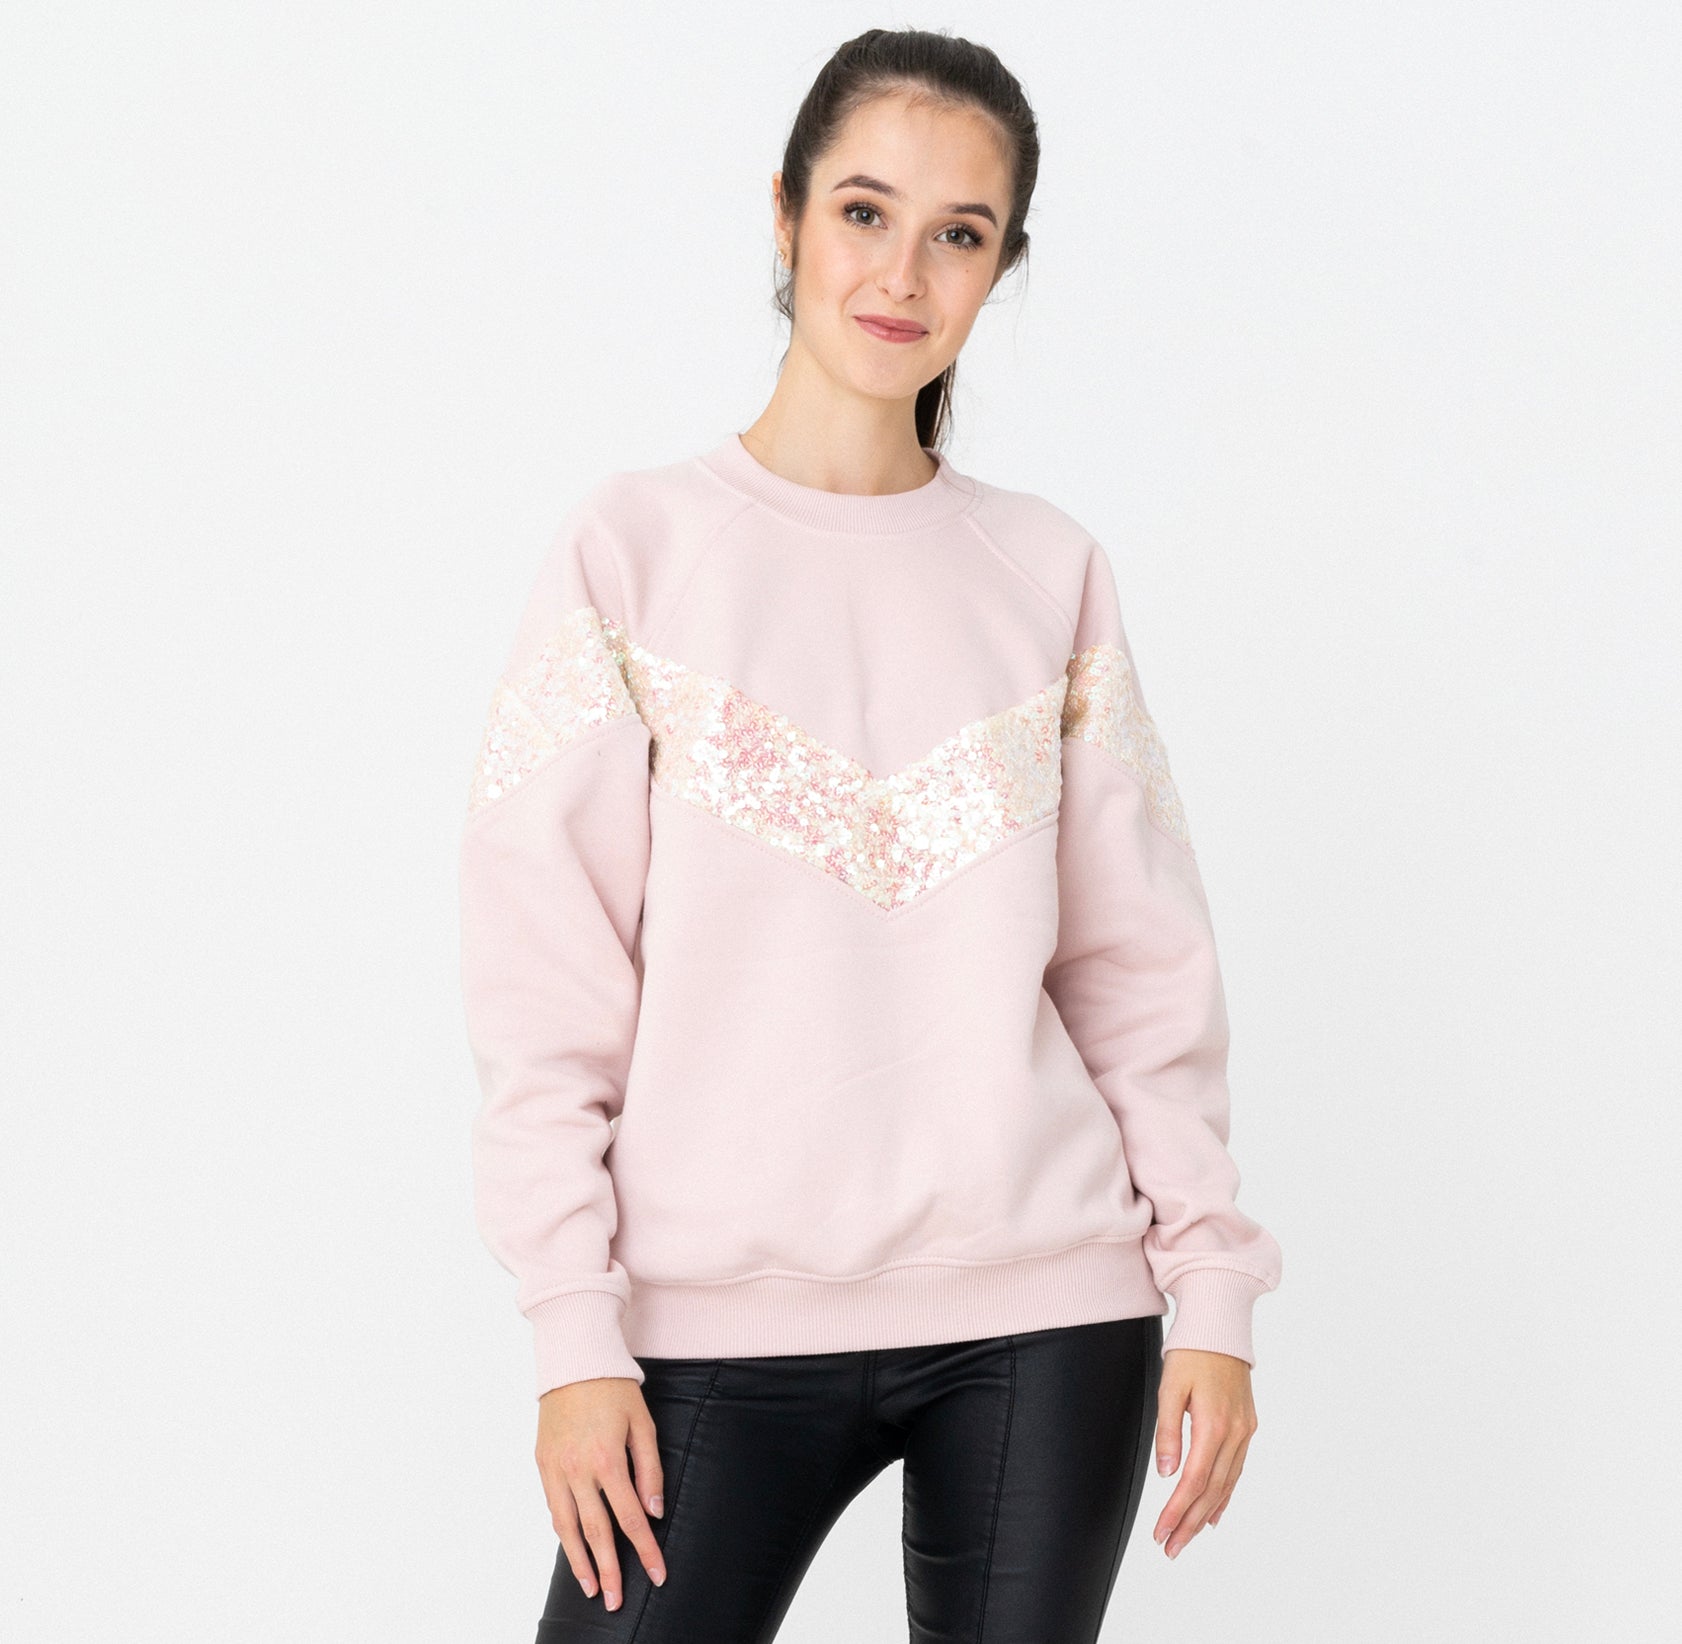 Elegant Pink Sweatshirt With Sequins